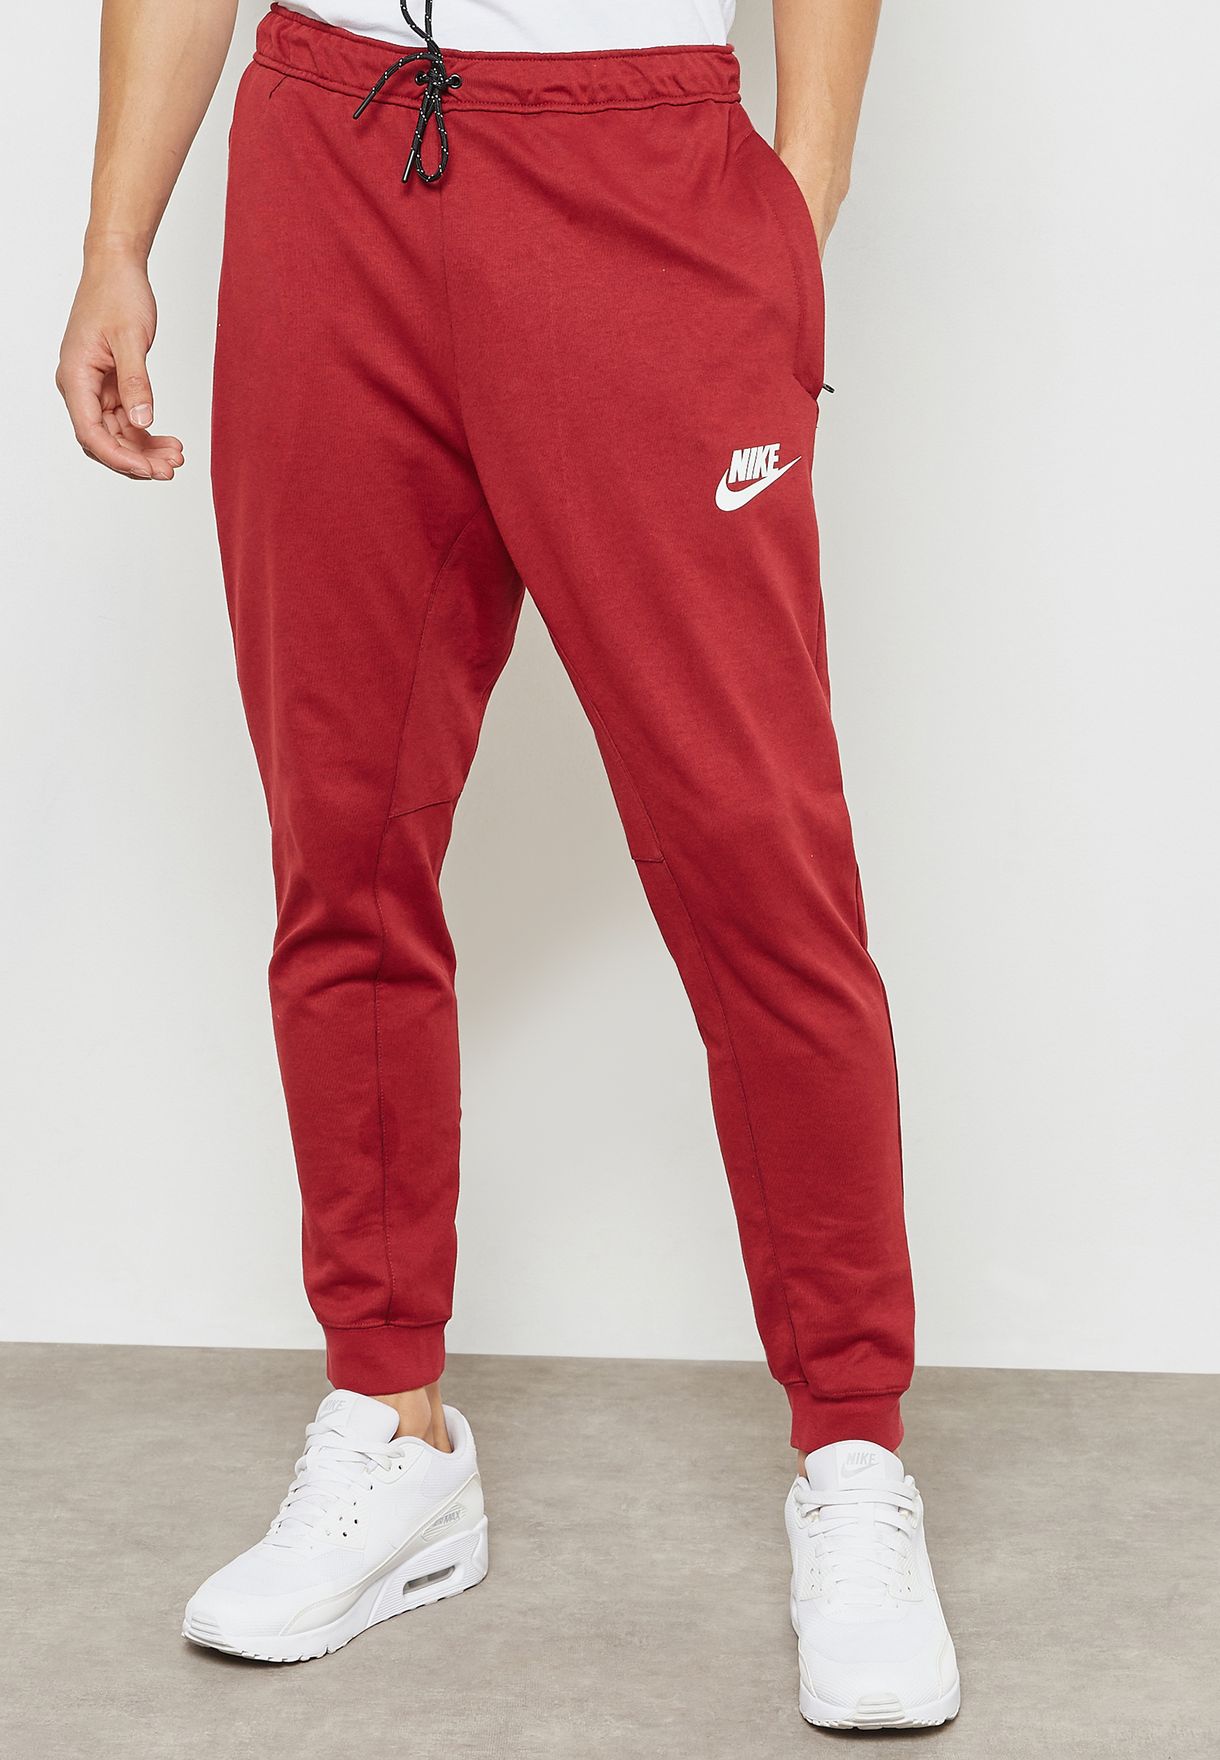 Buy Nike red AV15 Fleece Sweatpants for 